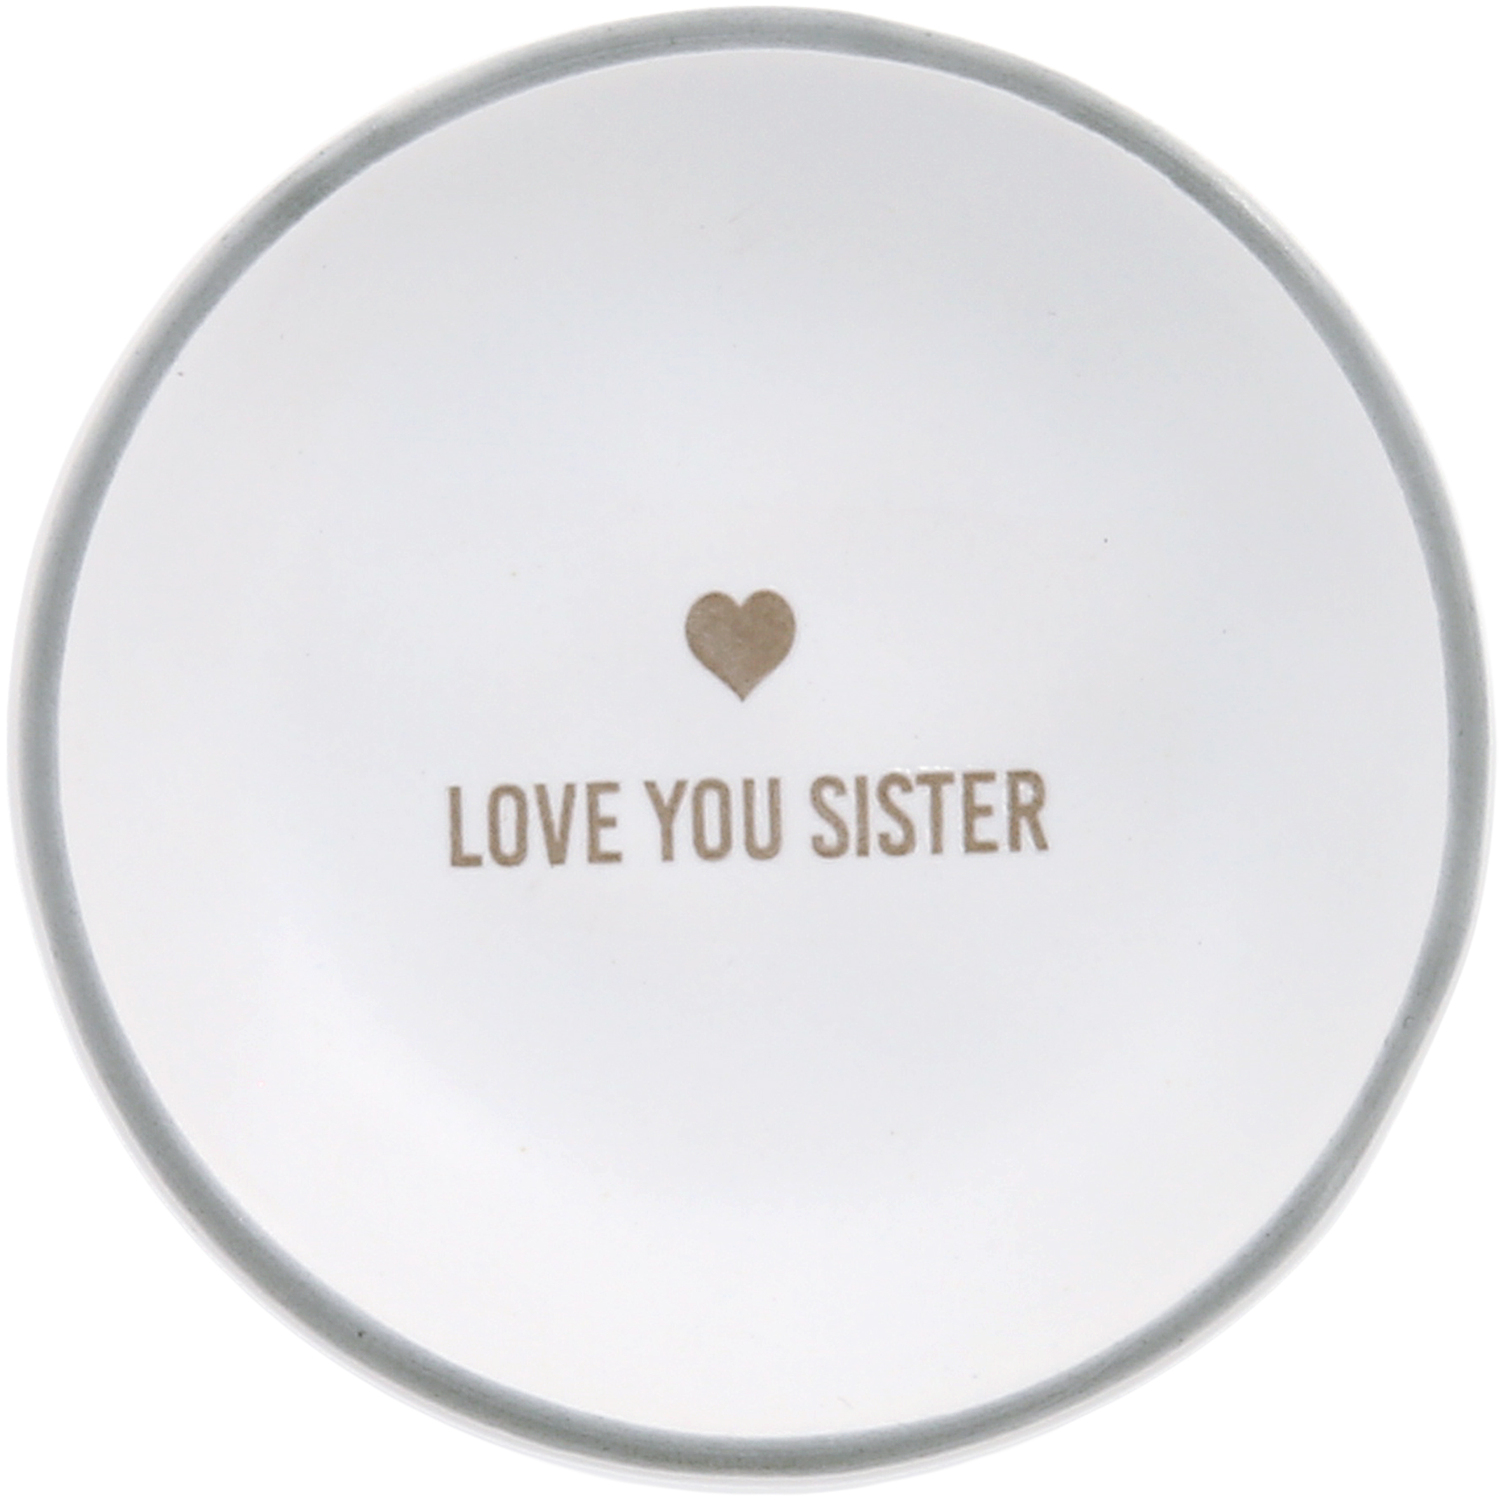 Love You Sister by Love You - Love You Sister - 2.5" Trinket Dish